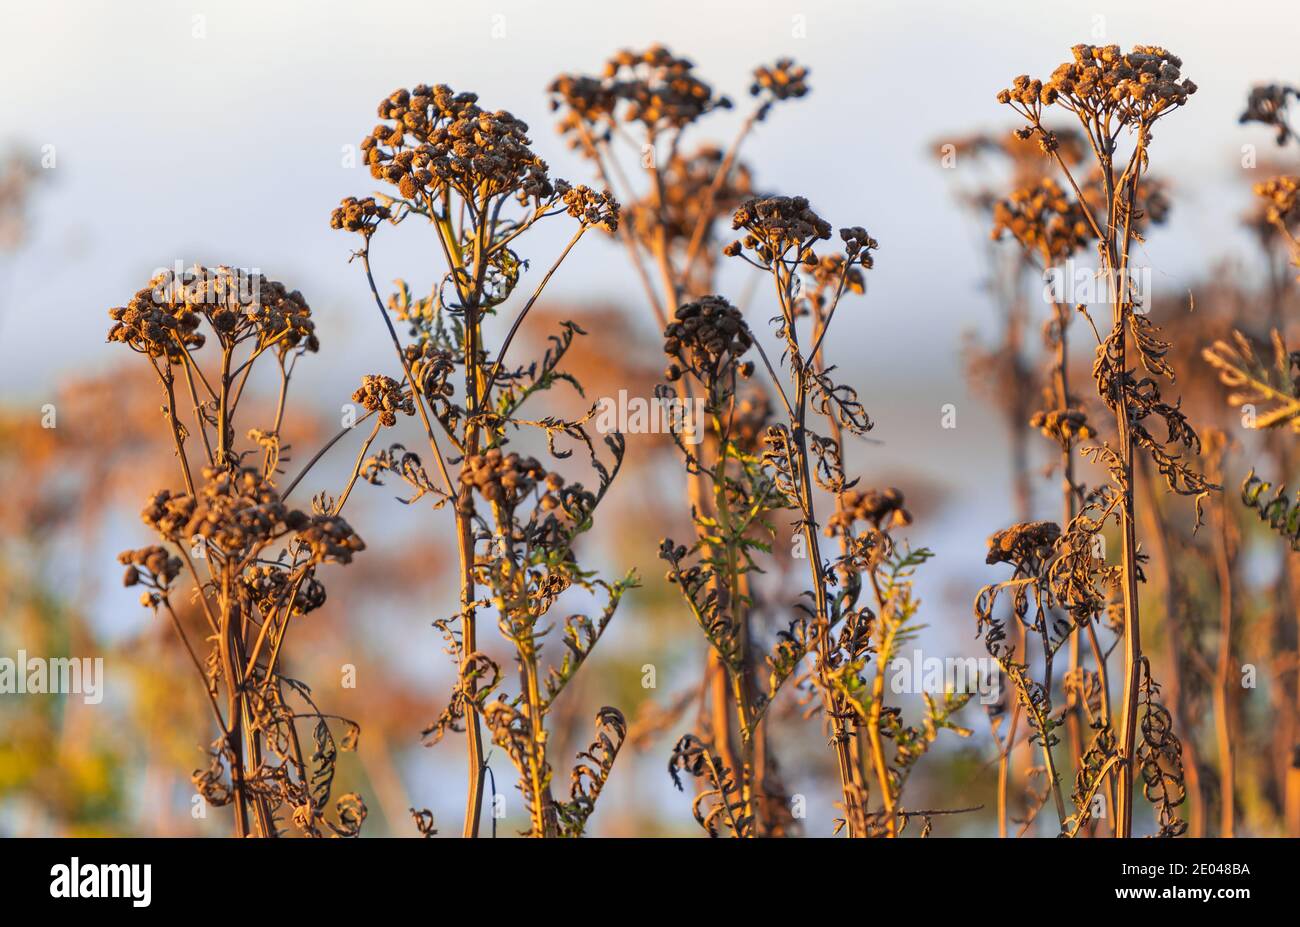 Fleurs sauvages brunes sèches sur le terrain pendant la lumière du coucher de soleil d'automne. Attention sélective, personne. Banque D'Images